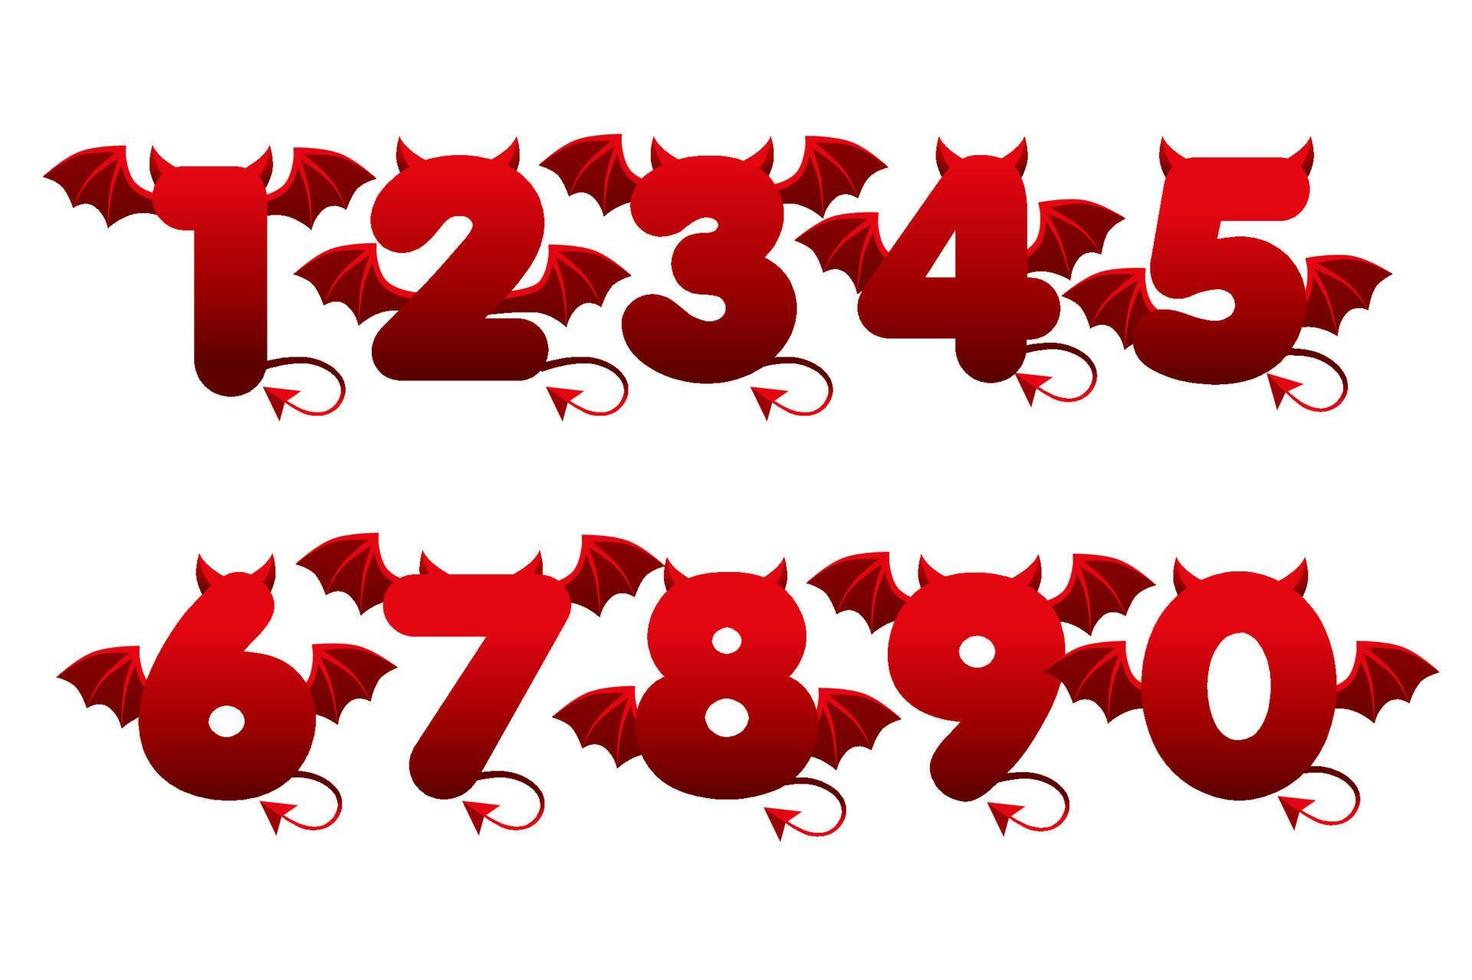 djävulens röda siffror med vingar för ui-spel. vektor illustration uppsättning läskiga tecknade demon nummer.